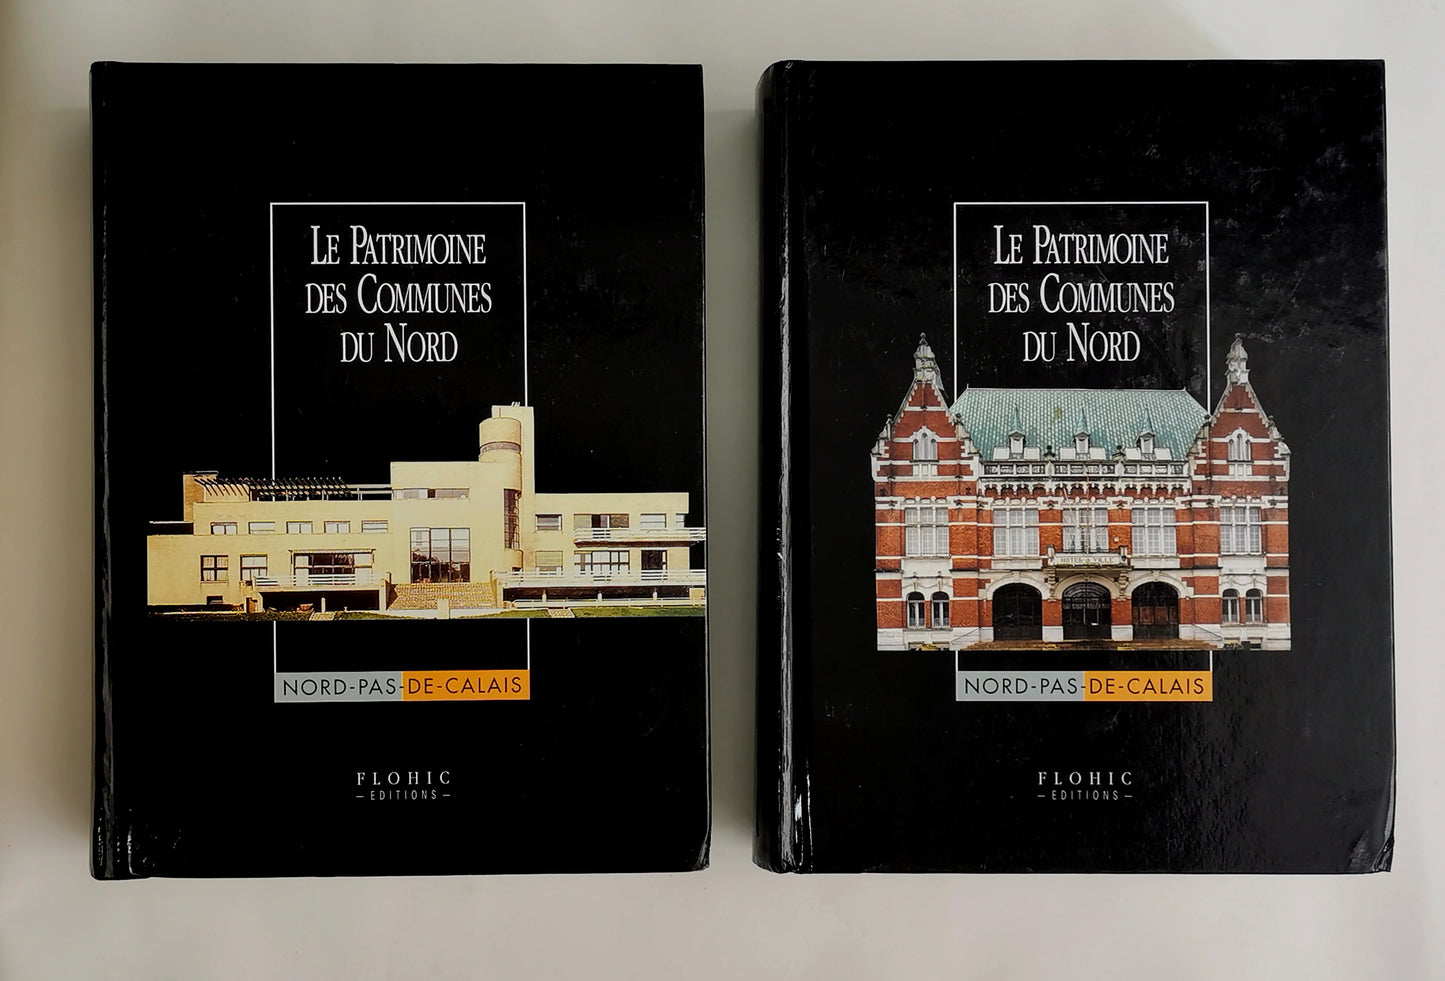 Le patrimoine des communes du nord, 2 volumes, Collectif, Collection Le Patrimoine des Communes de France, Flohic Editions, 2001.